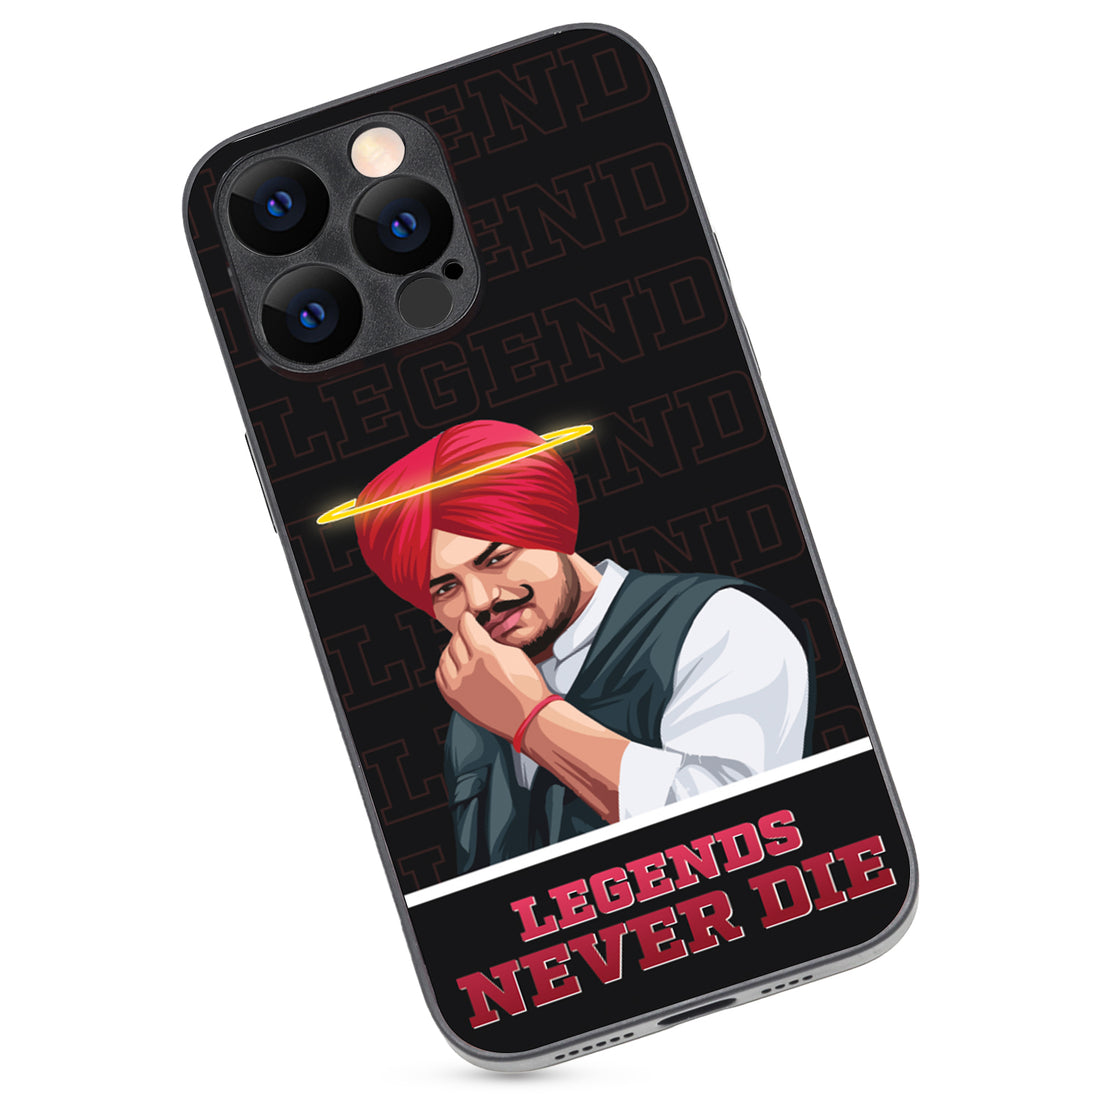 Legend Never Die Black Sidhu Moosewala iPhone 14 Pro Max Case